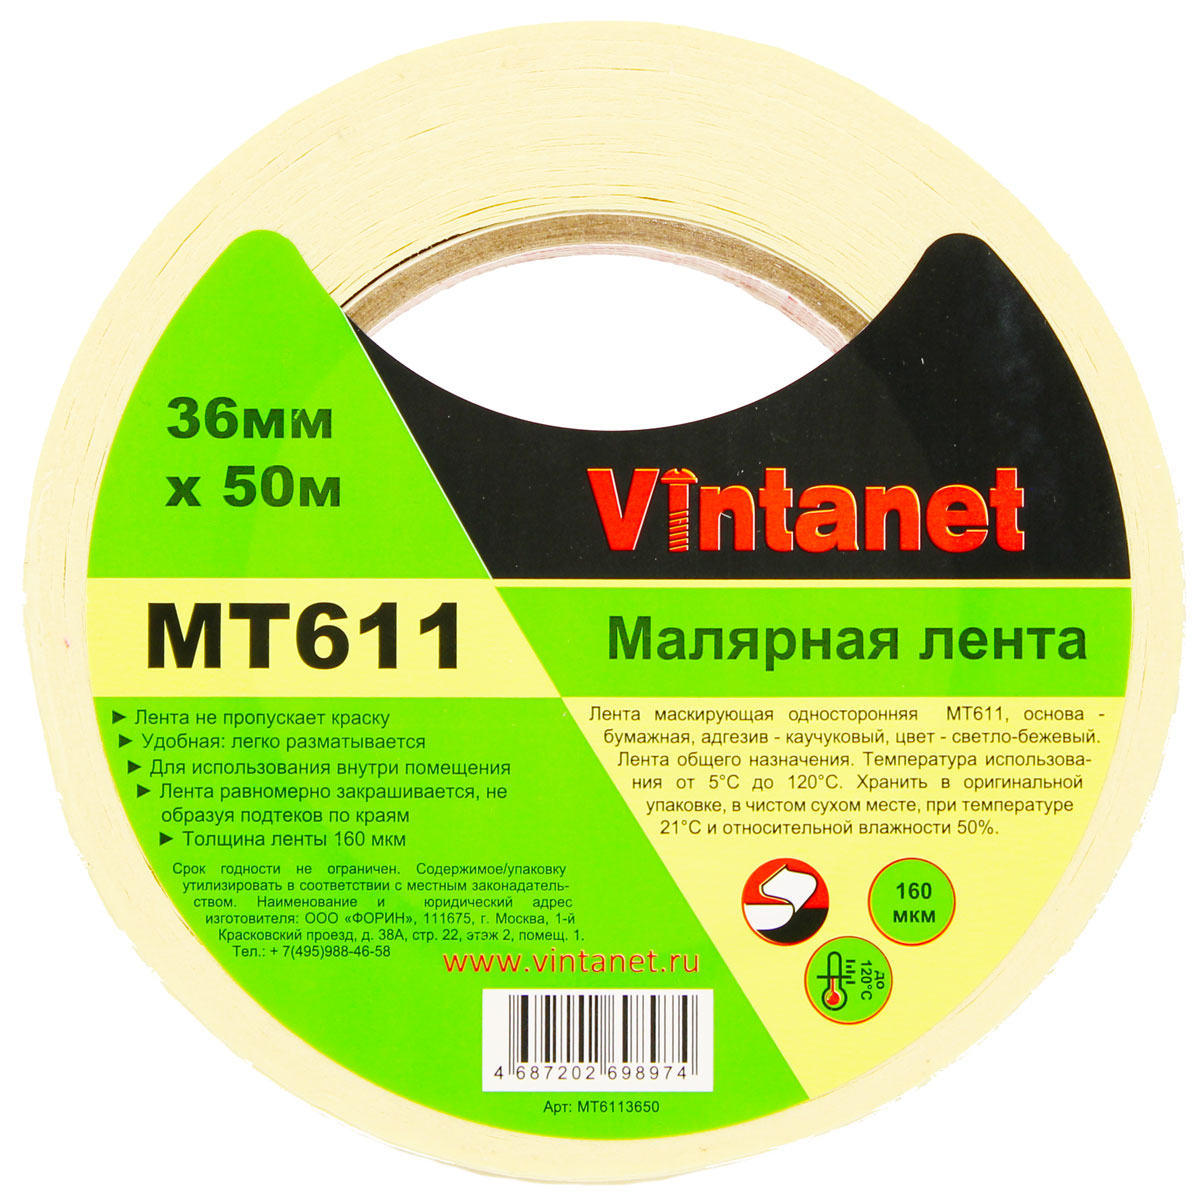 Лента малярная высокотемпературная Vintanet MT611, 120 С, 160 мкм, 36мм х 50м, MT6113650 малярная креппированная клейкая лента staff